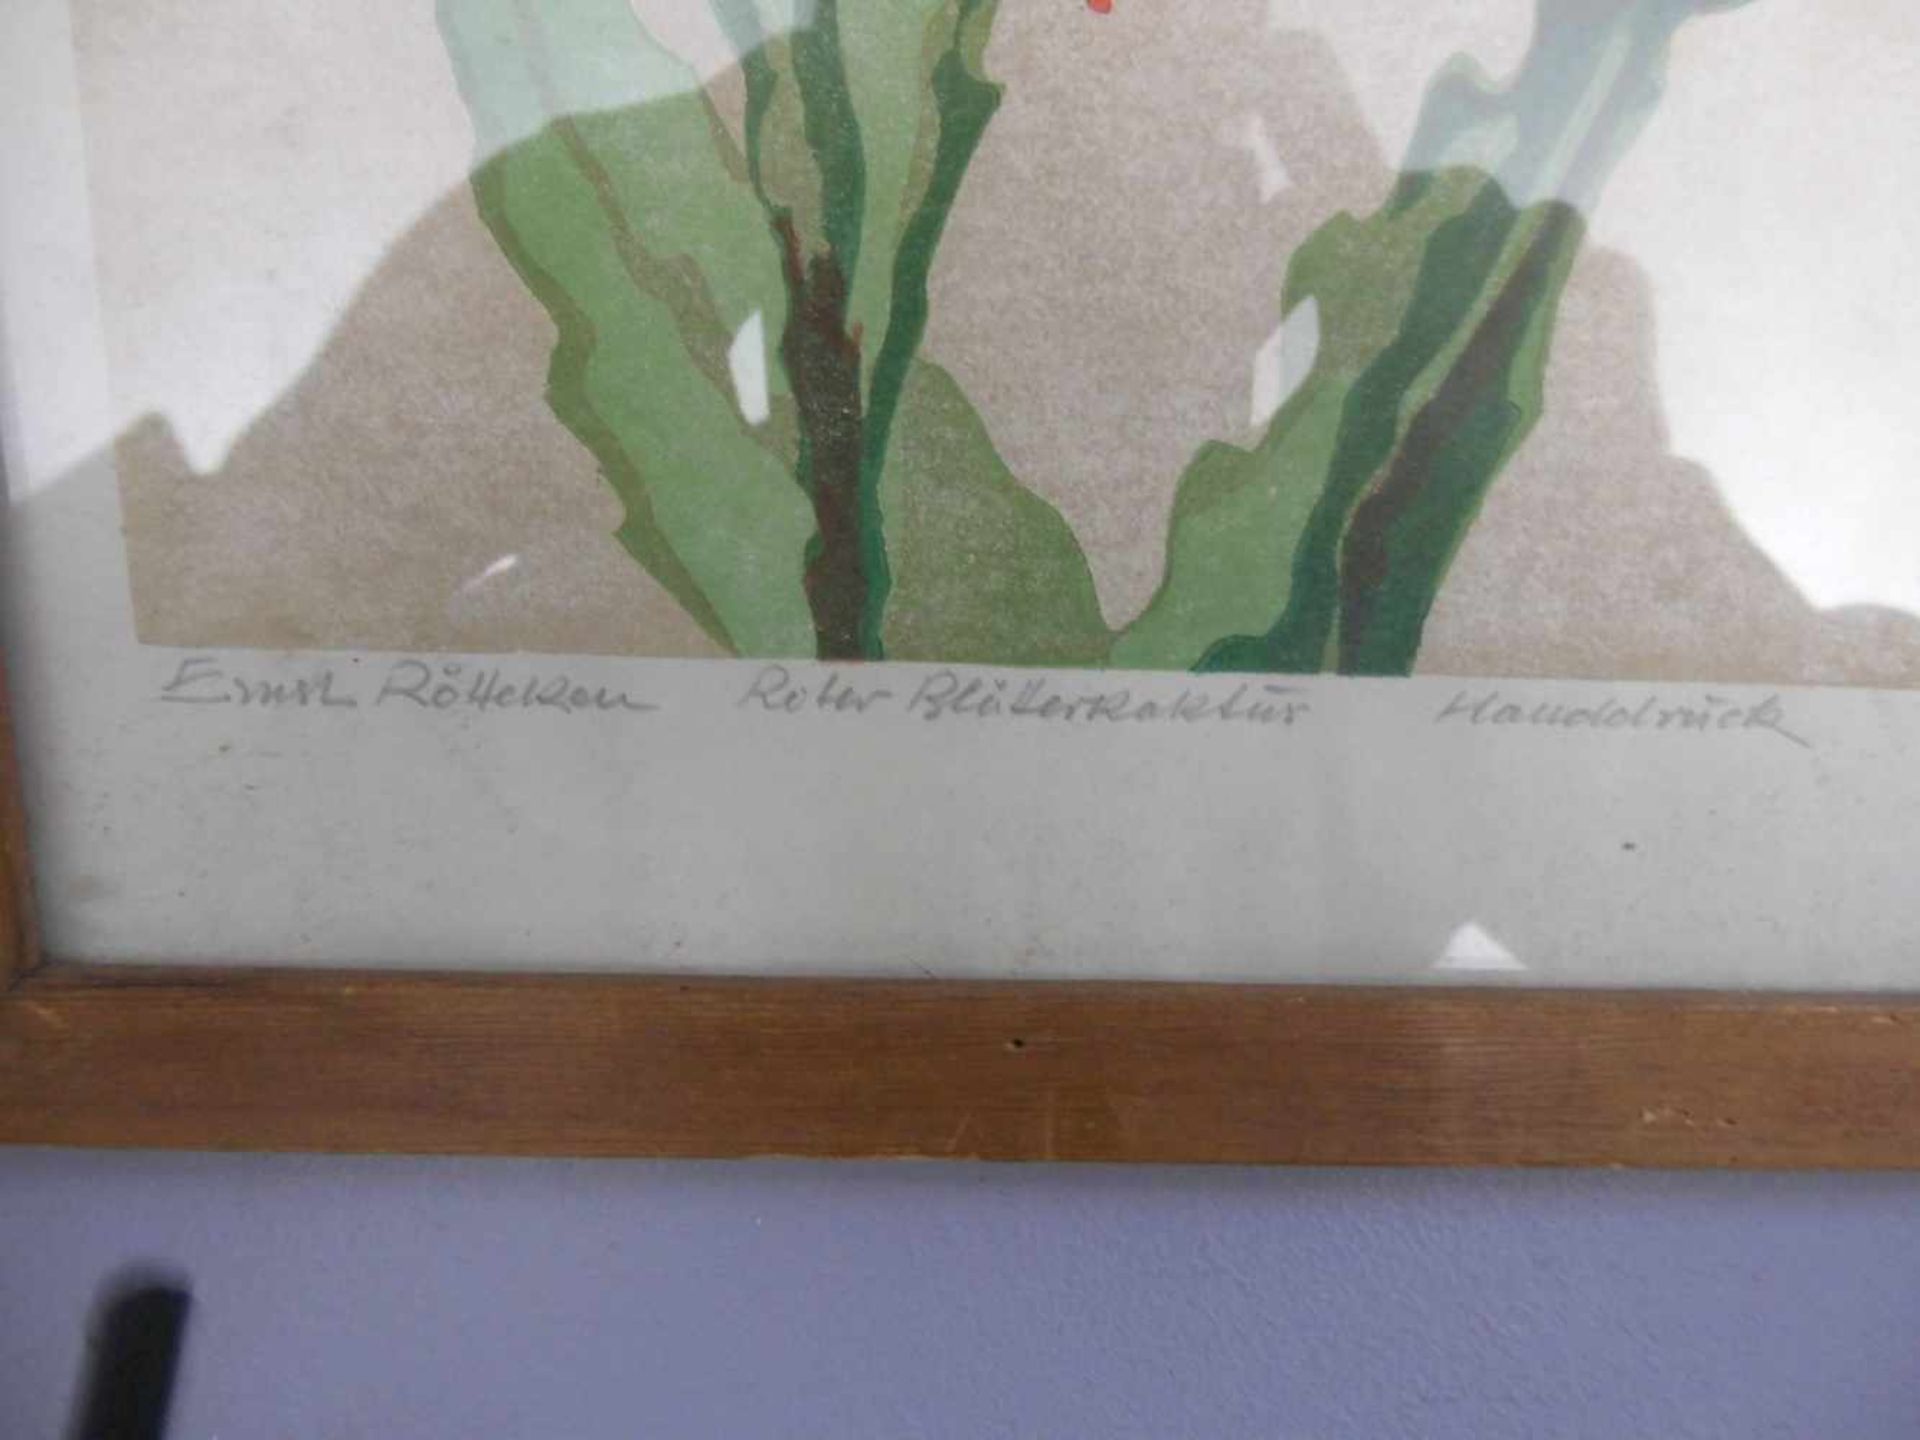 RÖTTEKEN, ERNST (Detmold 1882-1945), Farblinolschnitt: "Roter Blätterkaktus", mit Bleistift signiert - Image 2 of 2